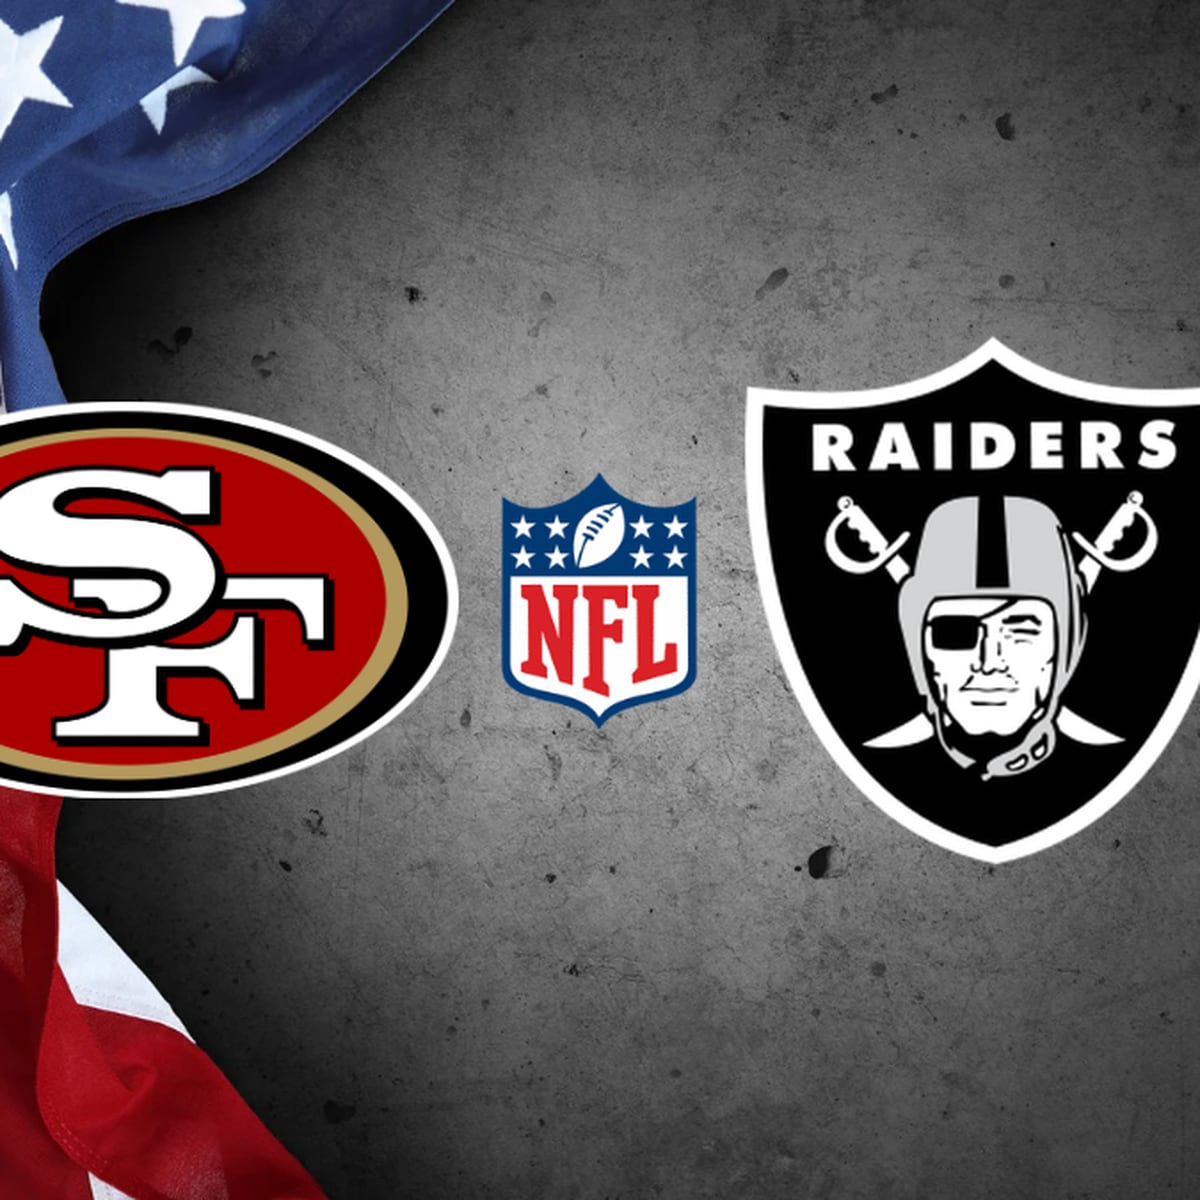 Raiders finalize preseason schedule vs. San Francisco 49ers, Los